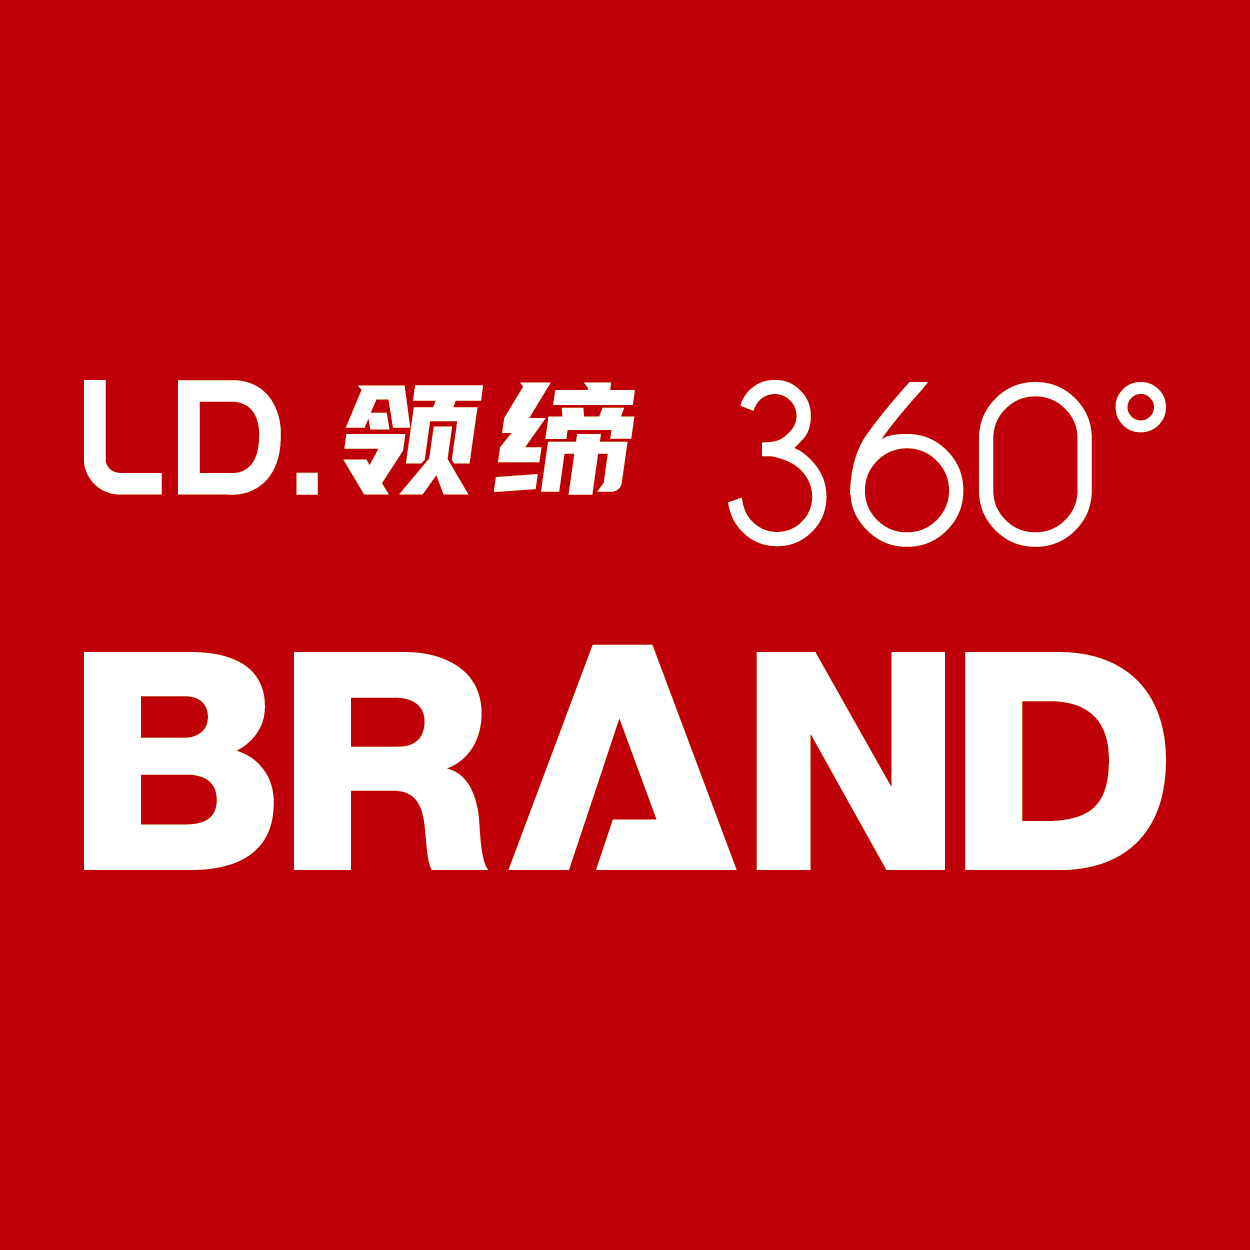 领缔品牌管理（上海）有限公司